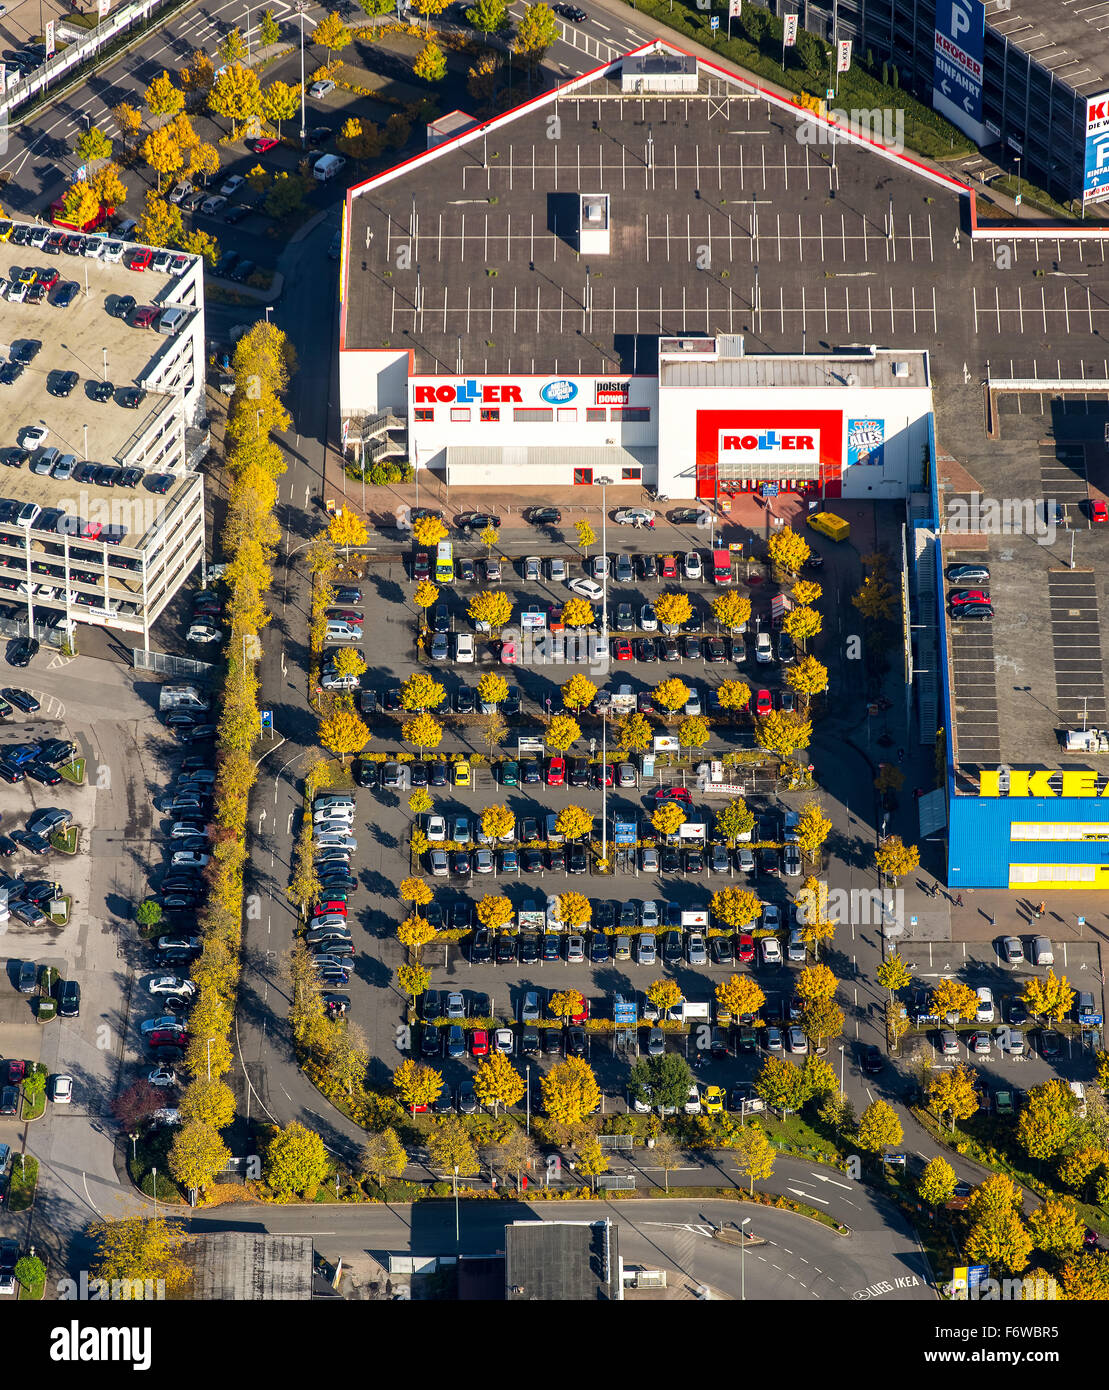 Parkplatz Möbel Shop Roller mit Laubbäume im Herbst Laub, Essen,  Ruhrgebiet, NRW, Deutschland Stockfotografie - Alamy